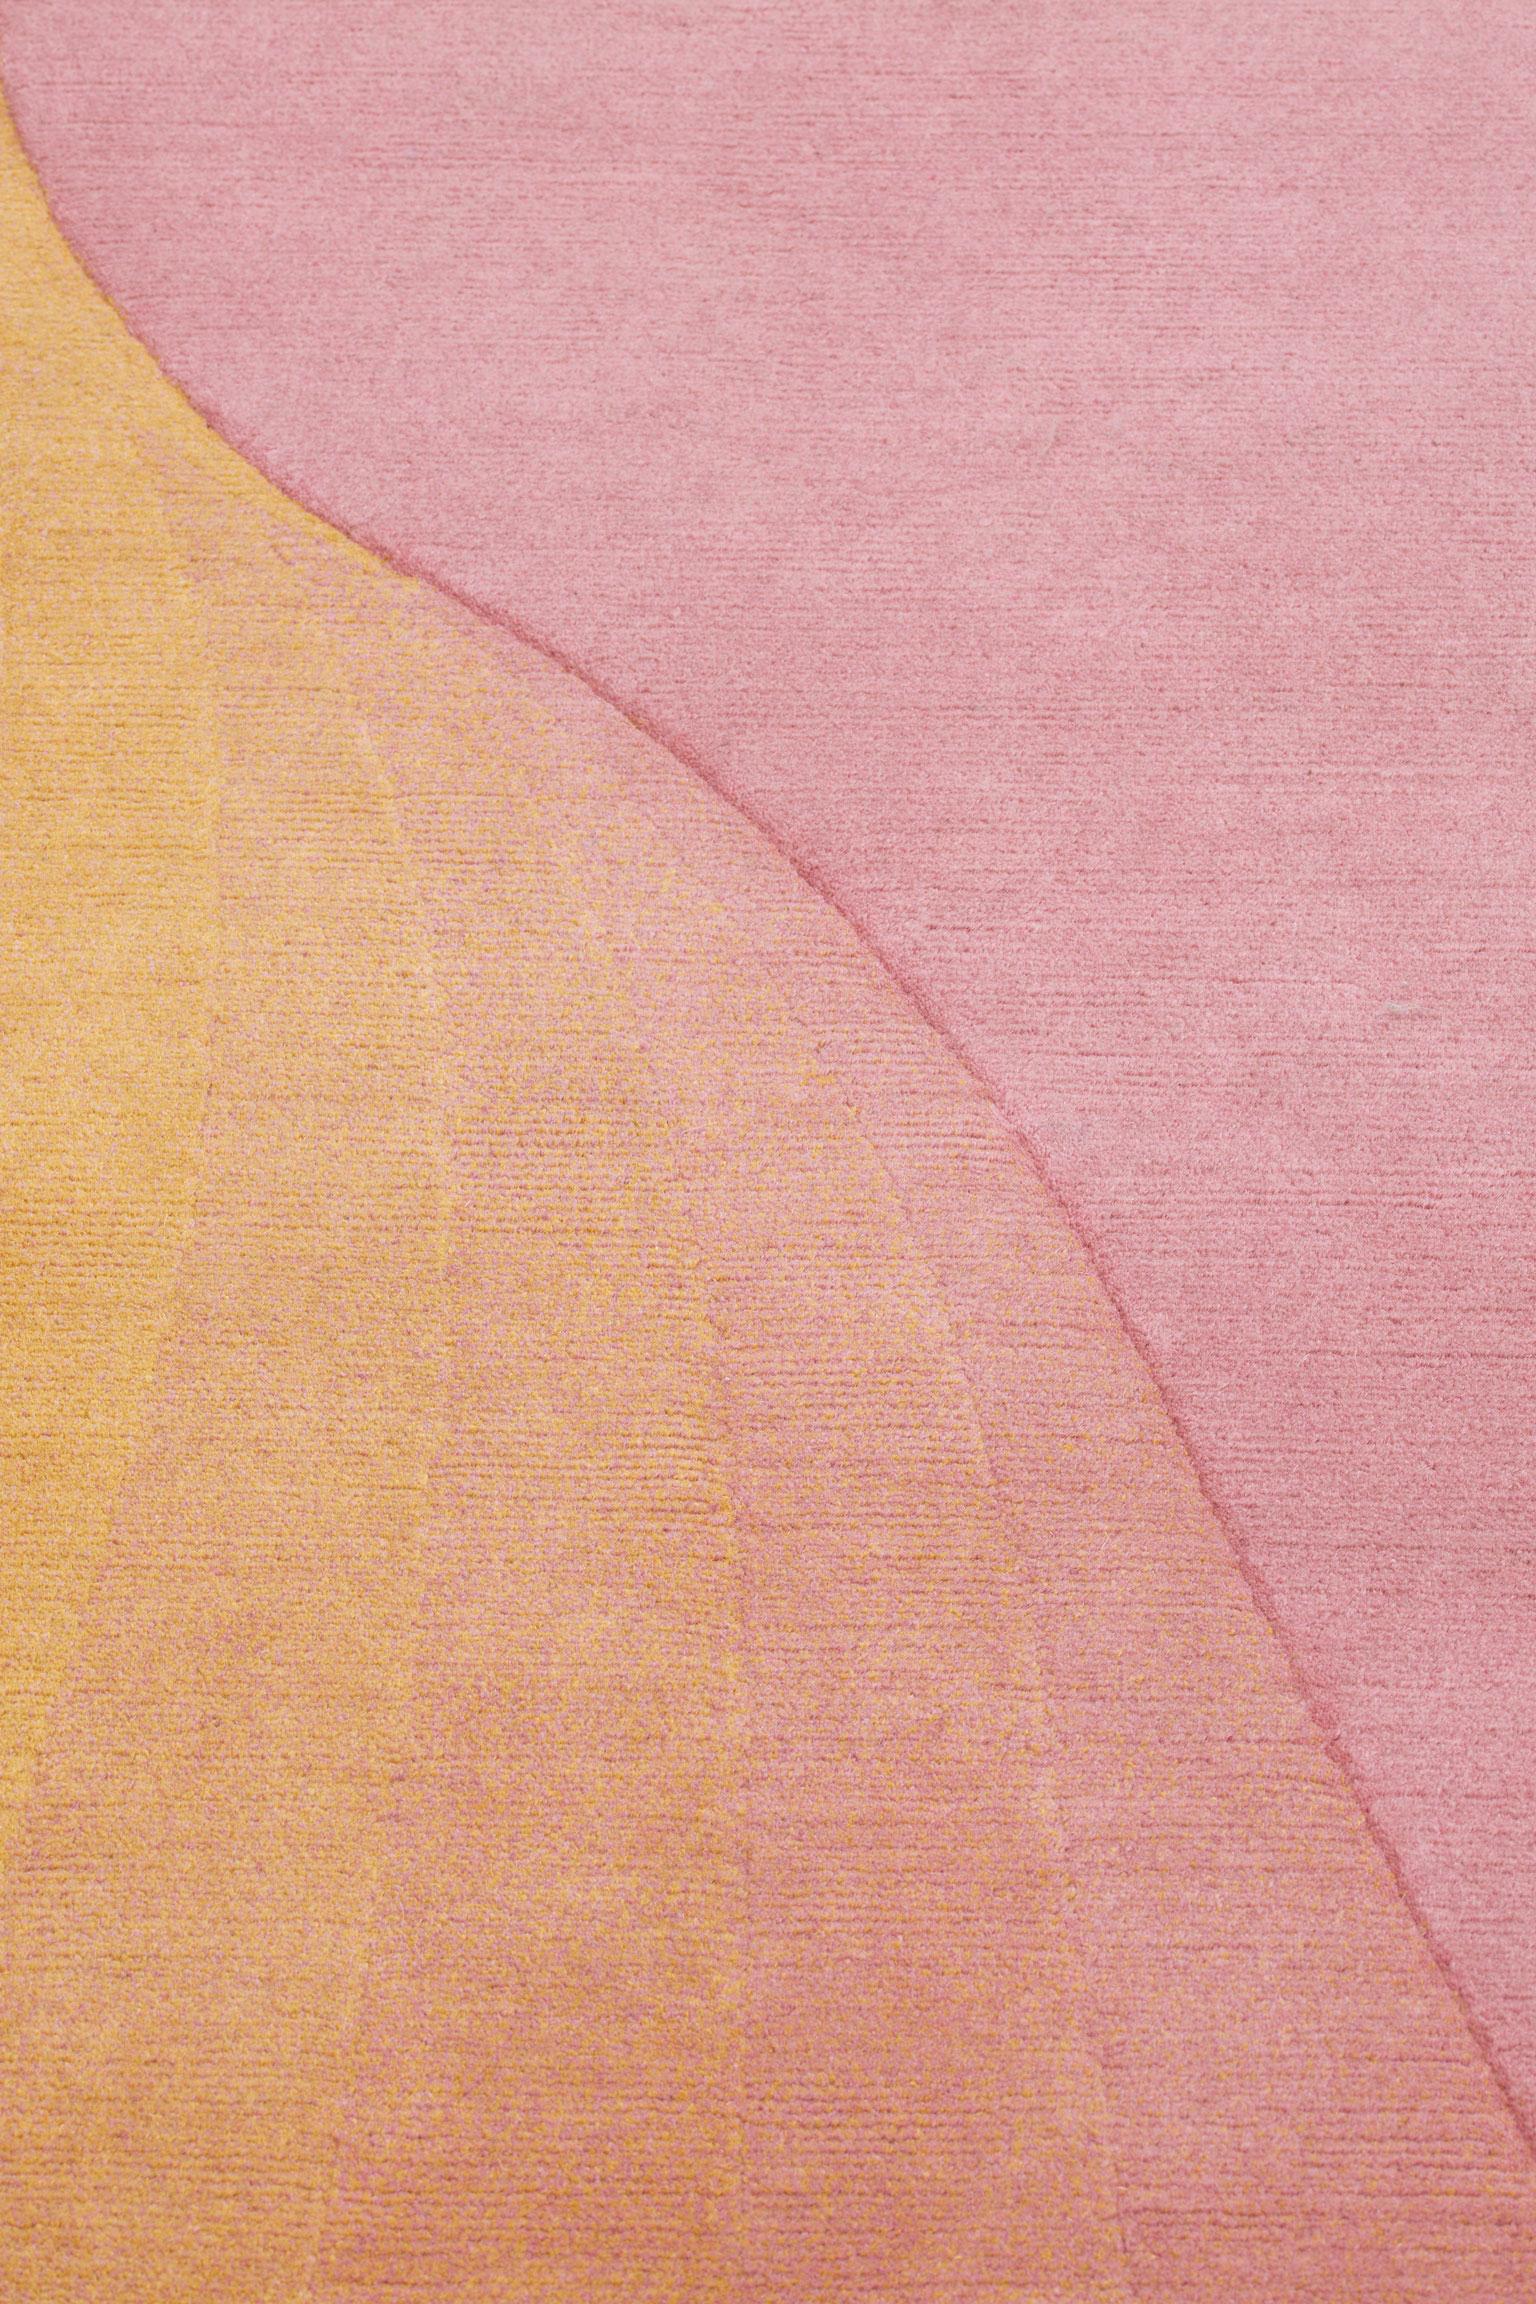 Népalais Collection de cc-tapis - Tidal  Tapis Wave Yellow Pink par Germans Ermičs en vente